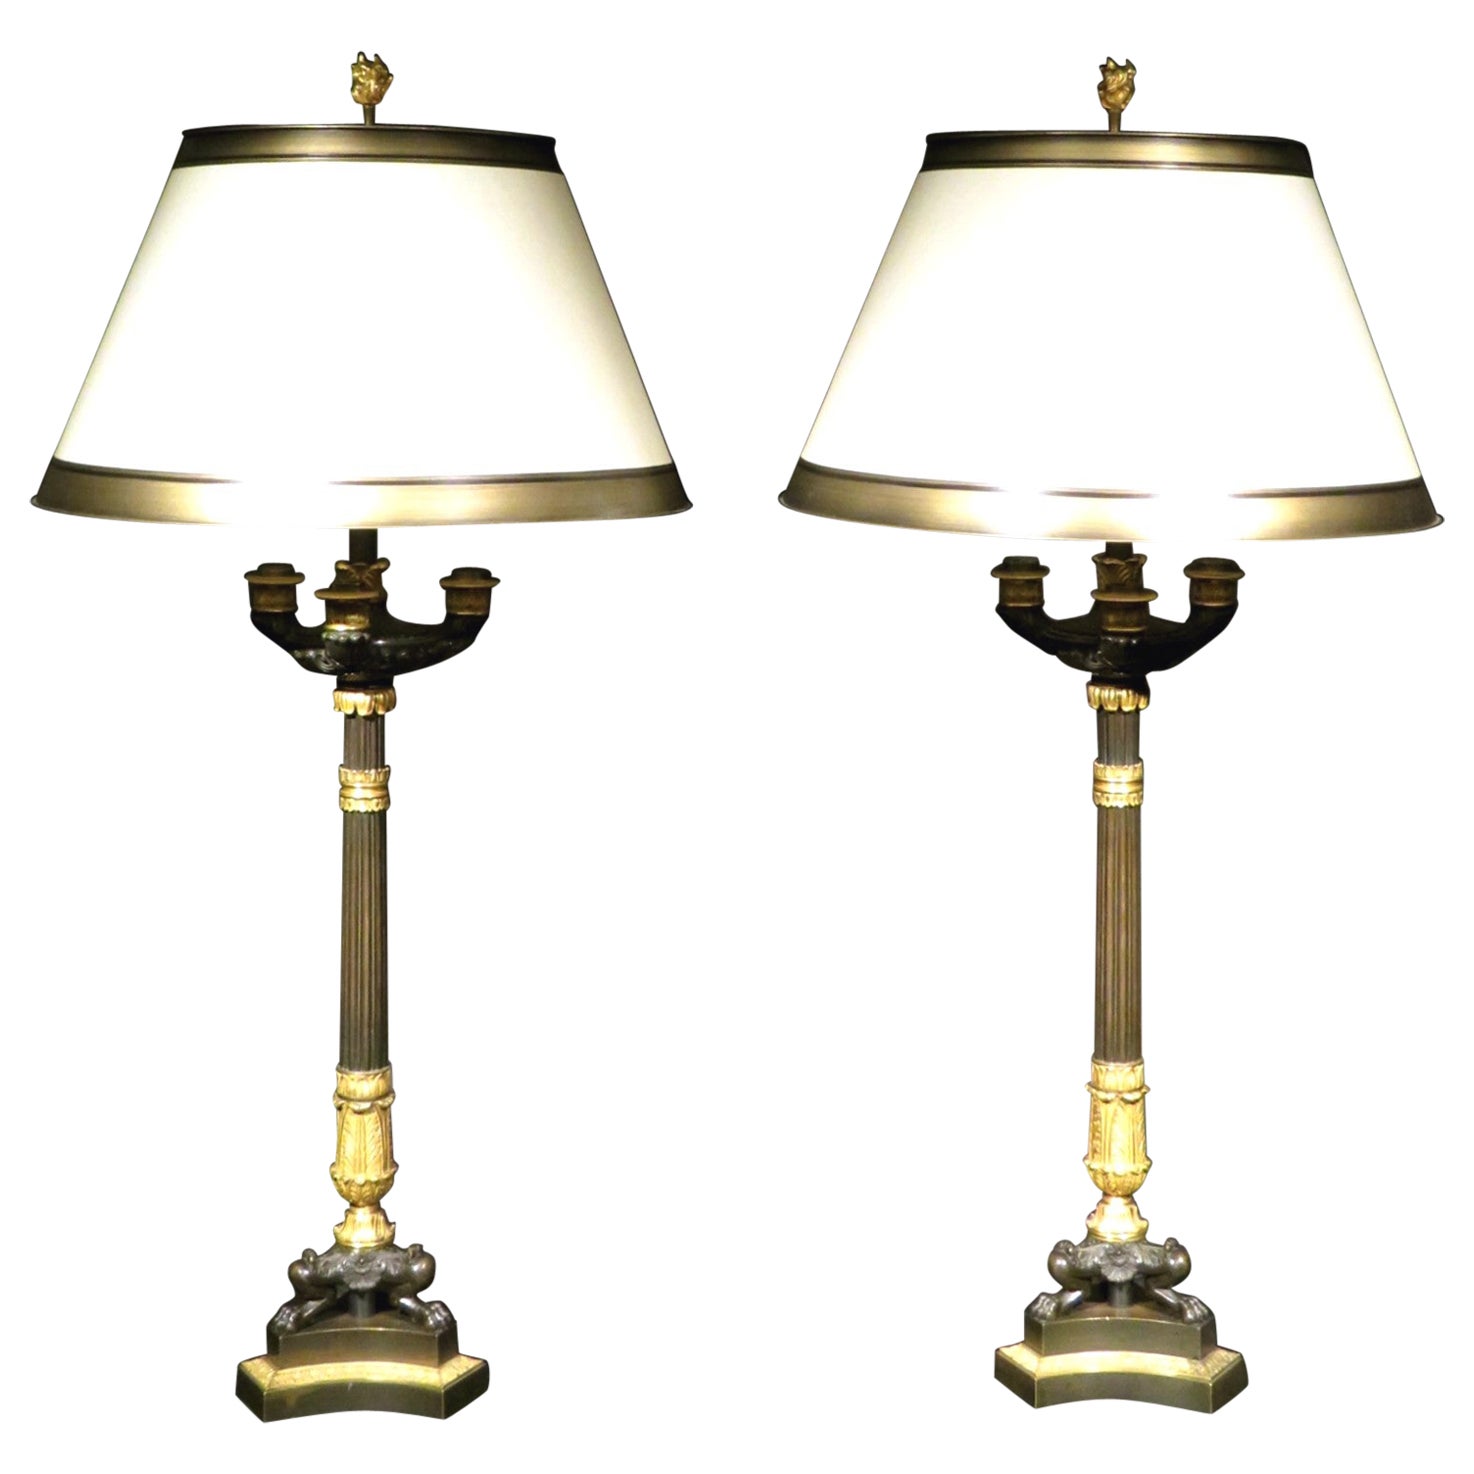 Très belle paire de candélabres / lampes Empire à trois lumières en bronze doré